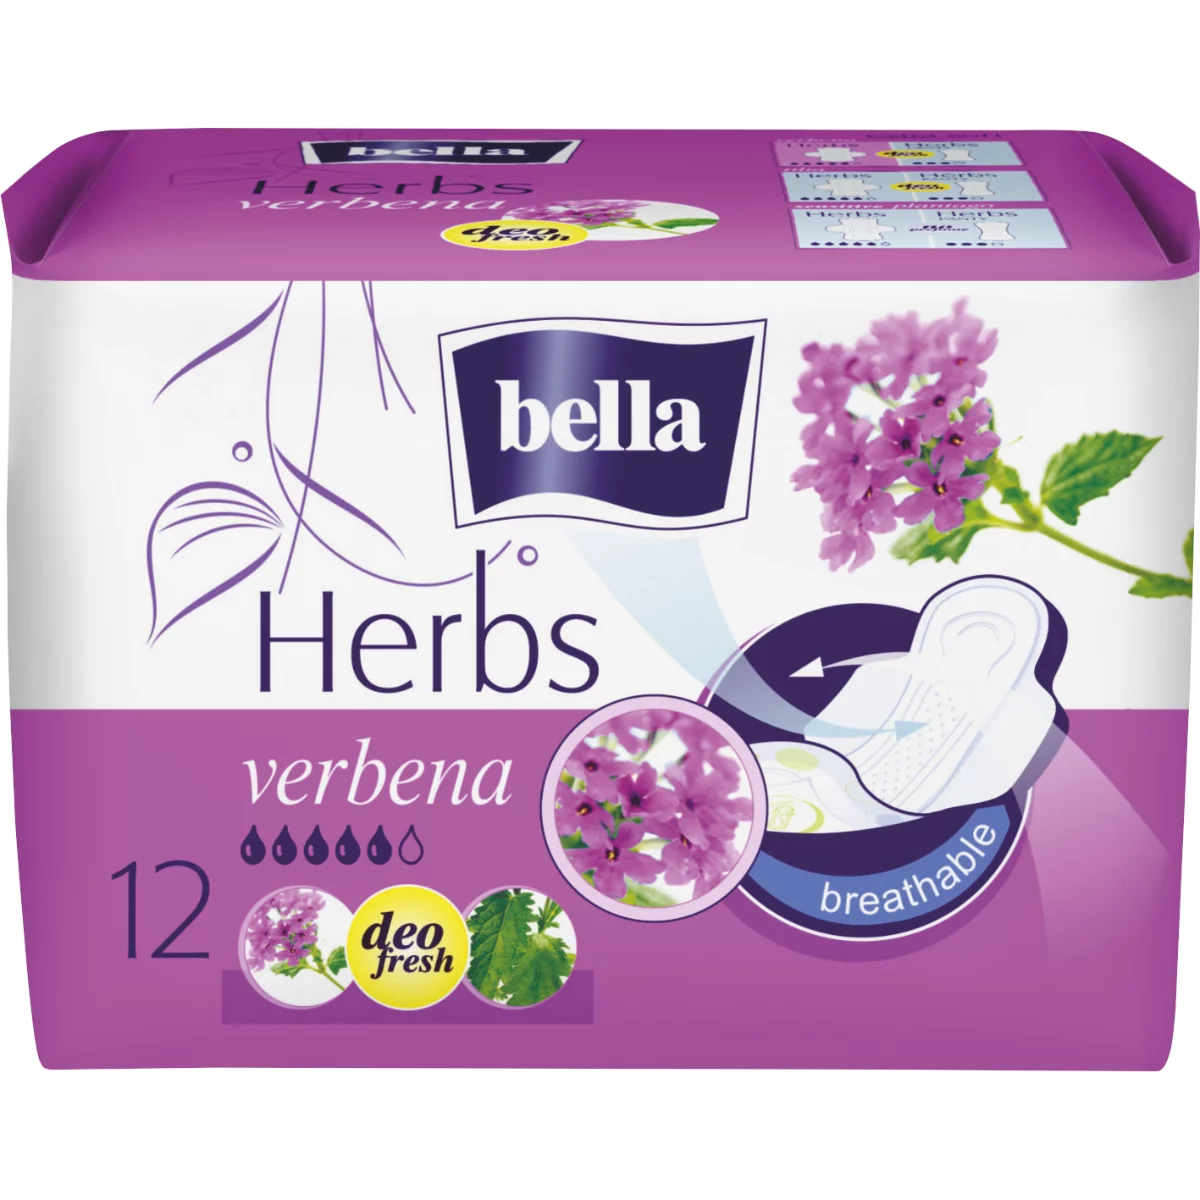 Bella Herbs egészségügyi betét 12db Vasfű